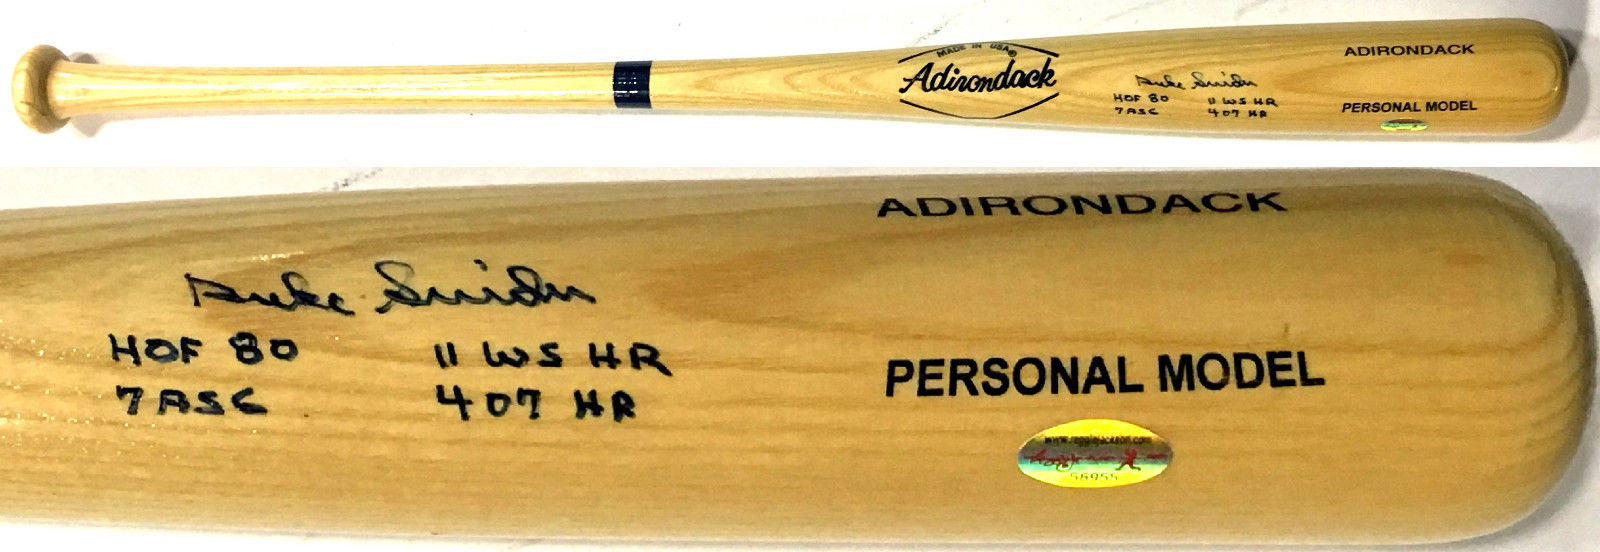 Duke Snider Signed “HOF 80, 7 ASG, 11 WS HR, 407 HR” 4 Inscribed Bat Dodgers COA